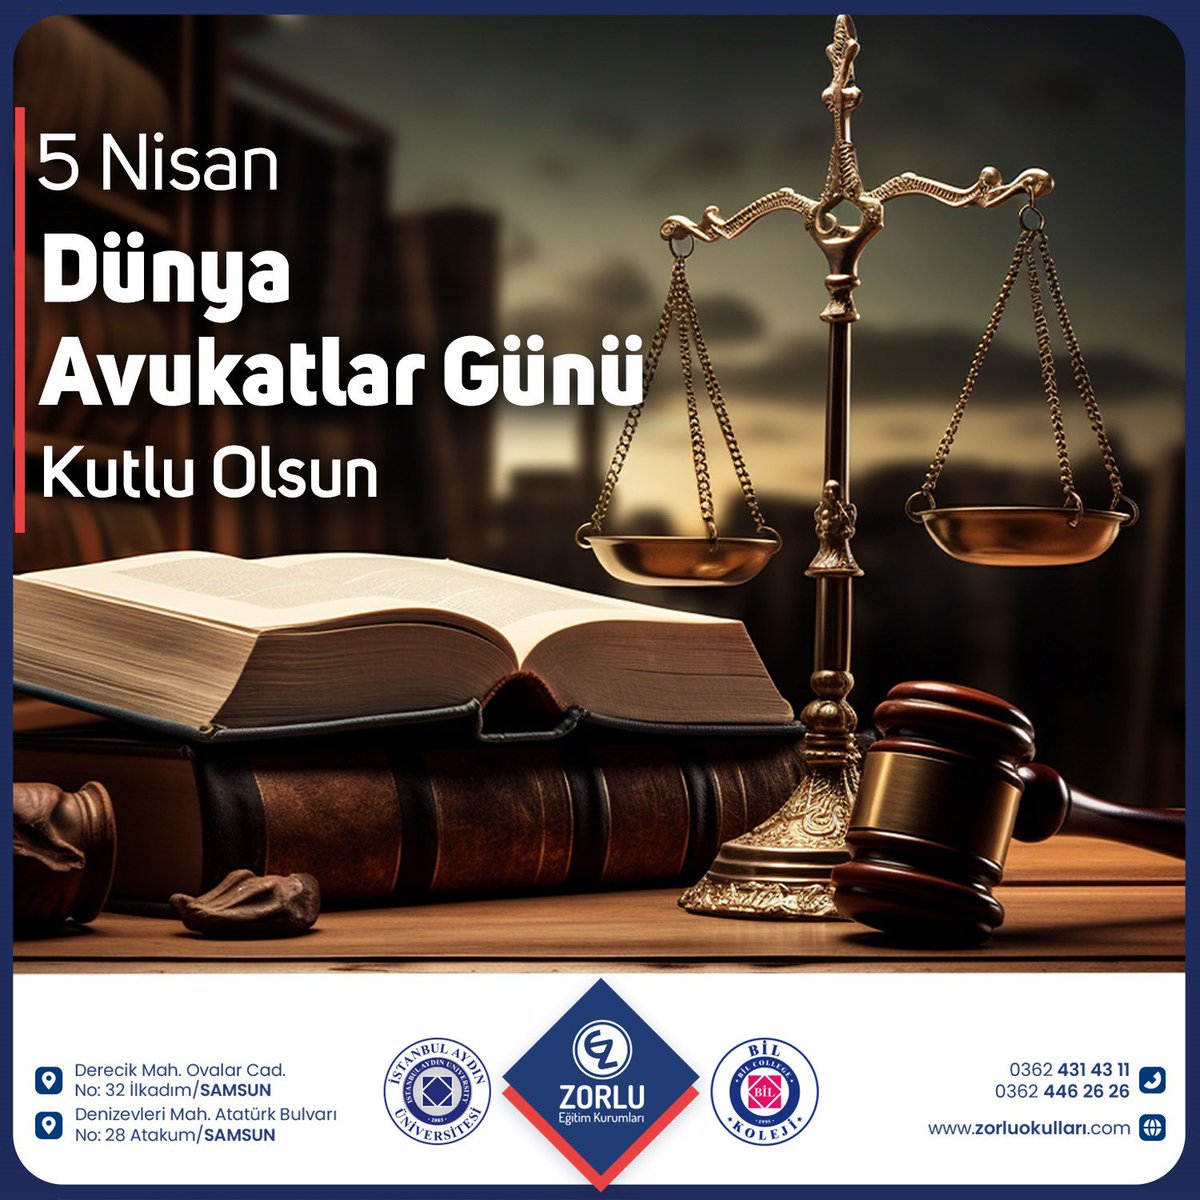 Dünya Avukatlar Gününüz Kutlu Olsun

#avukatlargünümüzkutluolsun #avukatlargünü
#zorlukoleji #istanbulaydınüniversitesi #bilkoleji #anaokul #ilkokul #ortaokul #lise #kişiselgelişimkursu #samsunözelokul #zorlueğitimkurumları #zorluçocuküniversitesi